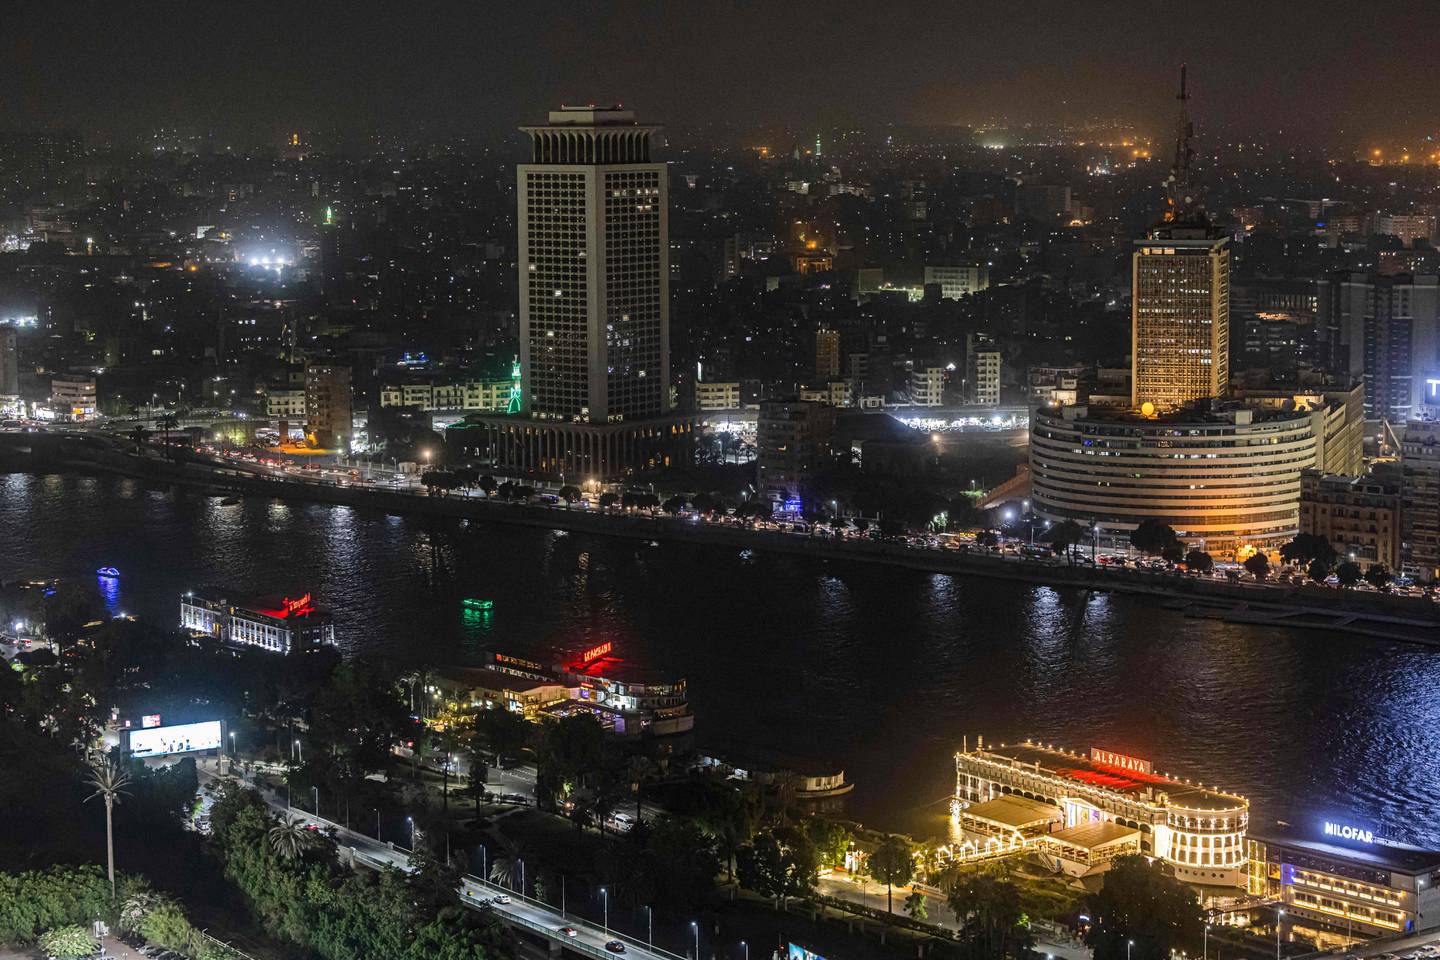 منظر ليلي لوسط القاهرة ، العاصمة المصرية التي يبلغ عدد سكانها نحو 20 مليون نسمة ، والتي تضررت بشدة من جراء الأزمة الاقتصادية.  وكالة فرانس برس